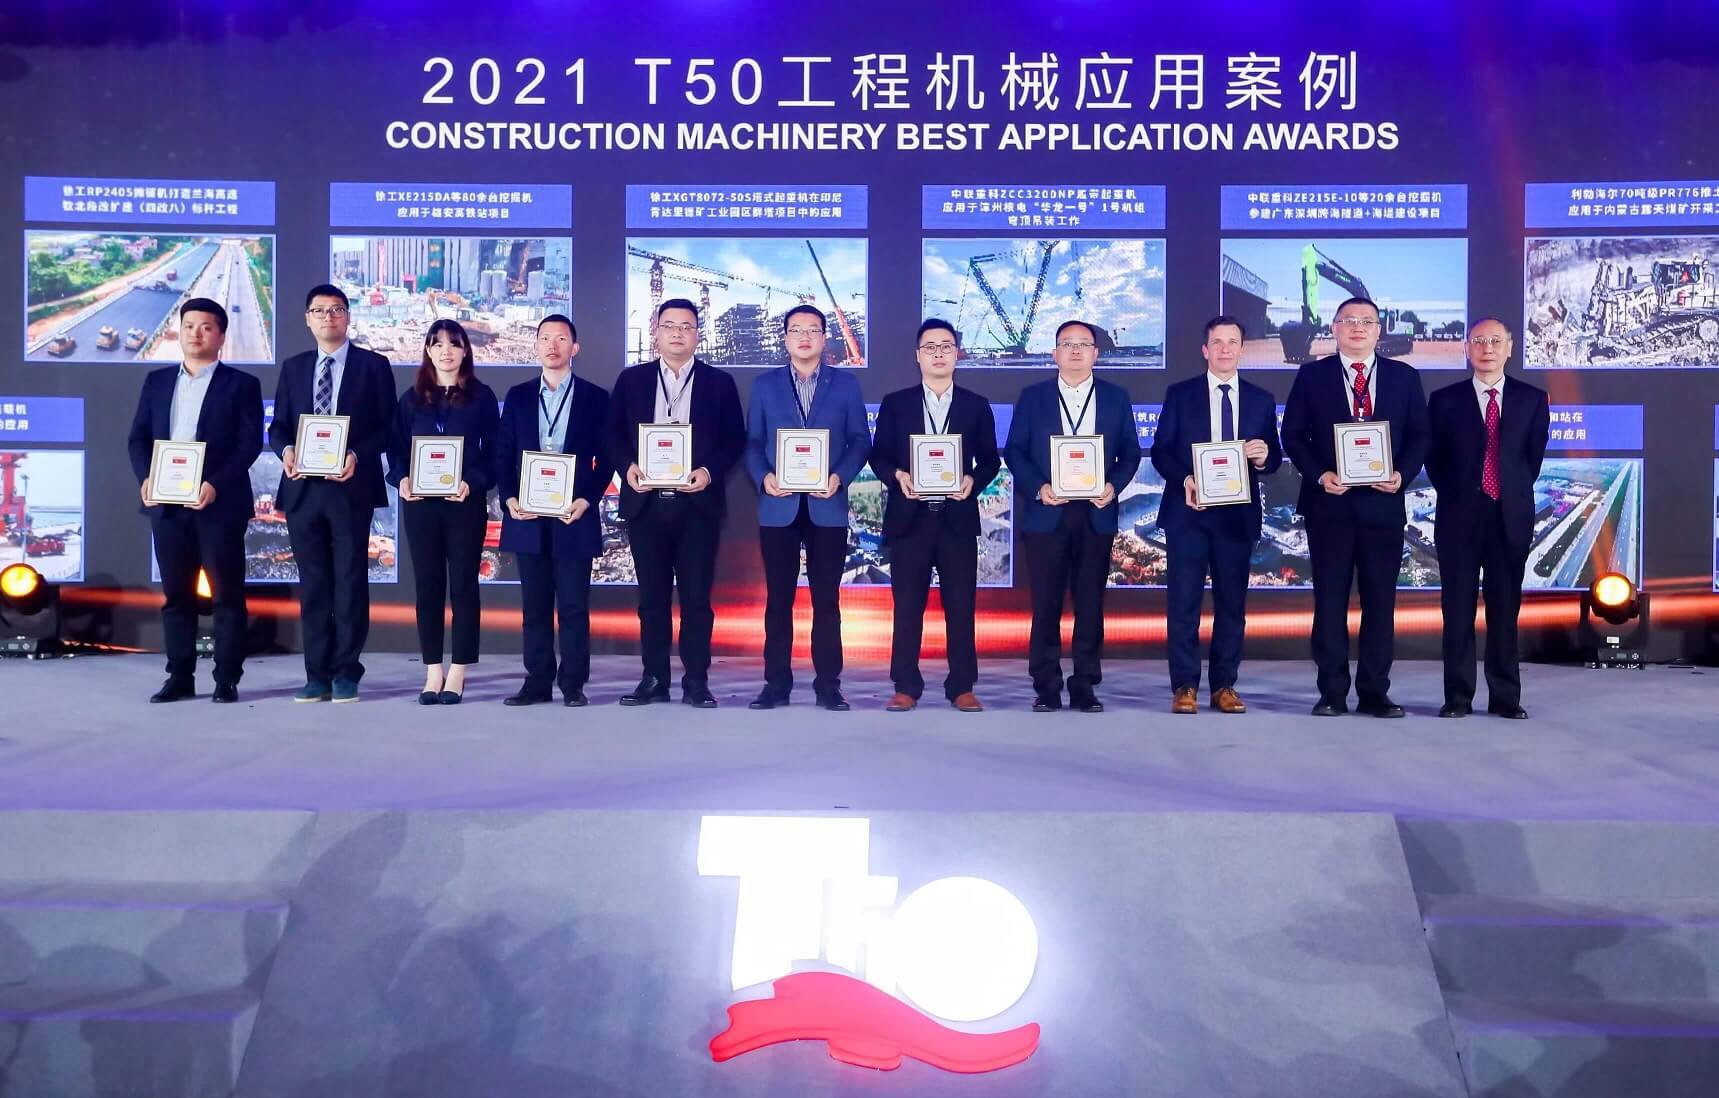 Саммит T50 мировой индустрии строительного машиностроения 2021